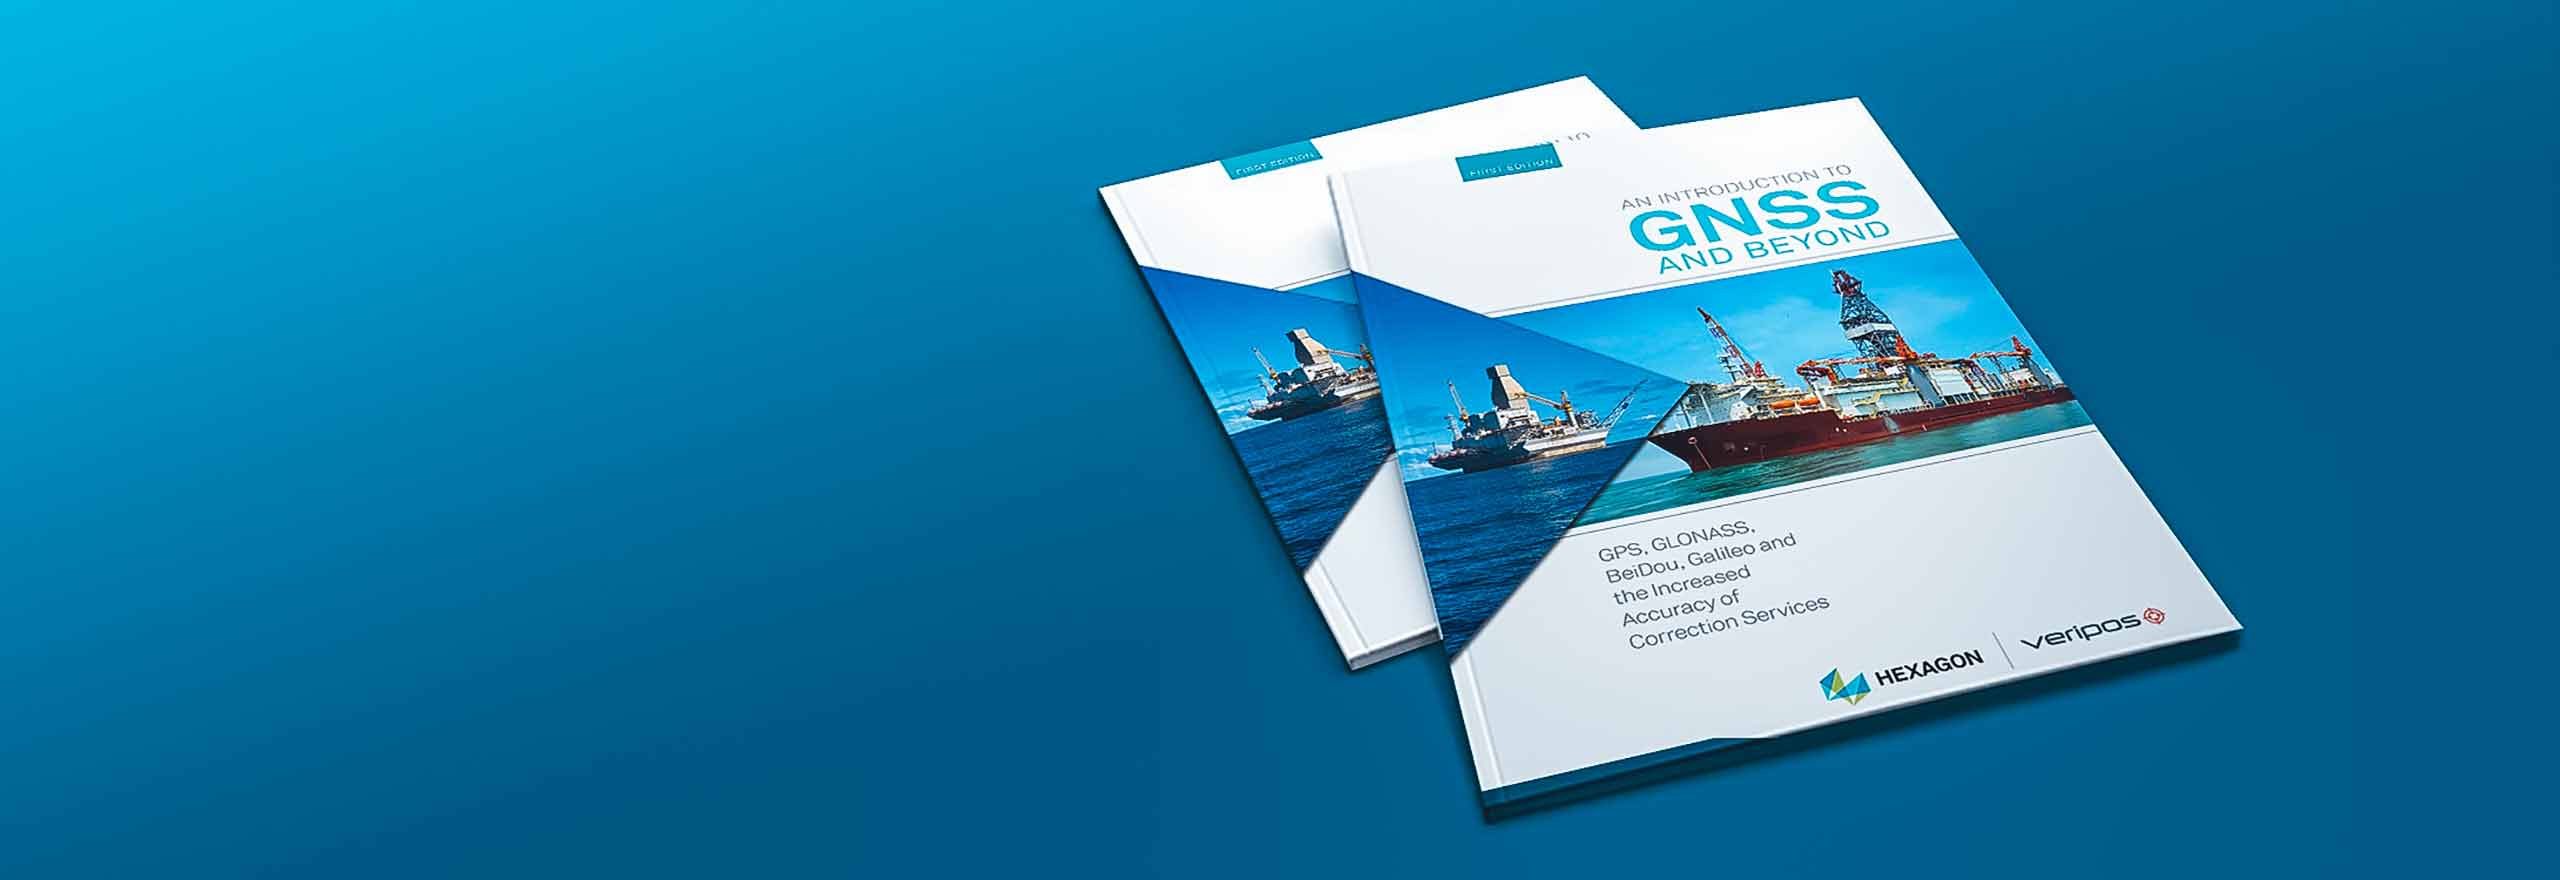 El libro electrónico «Introduction to GNSS» se muestra sobre un fondo turquesa.